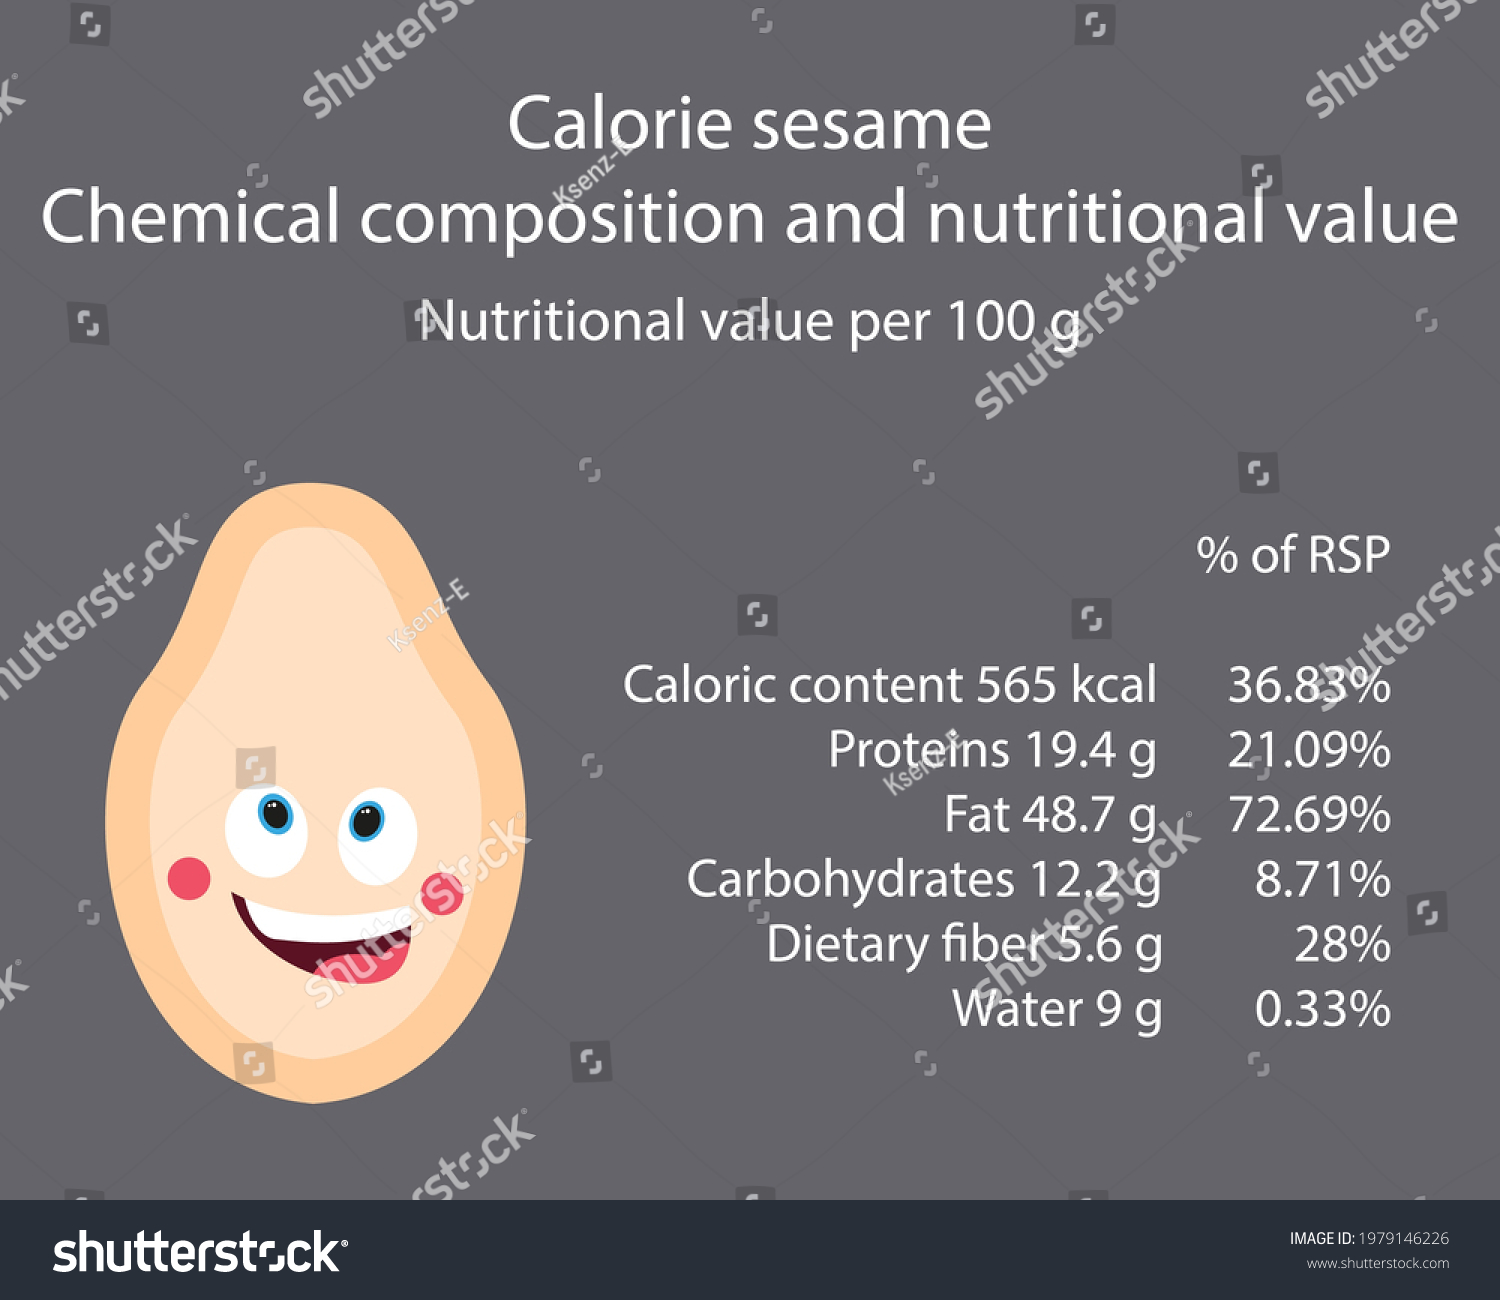 little sesame calories